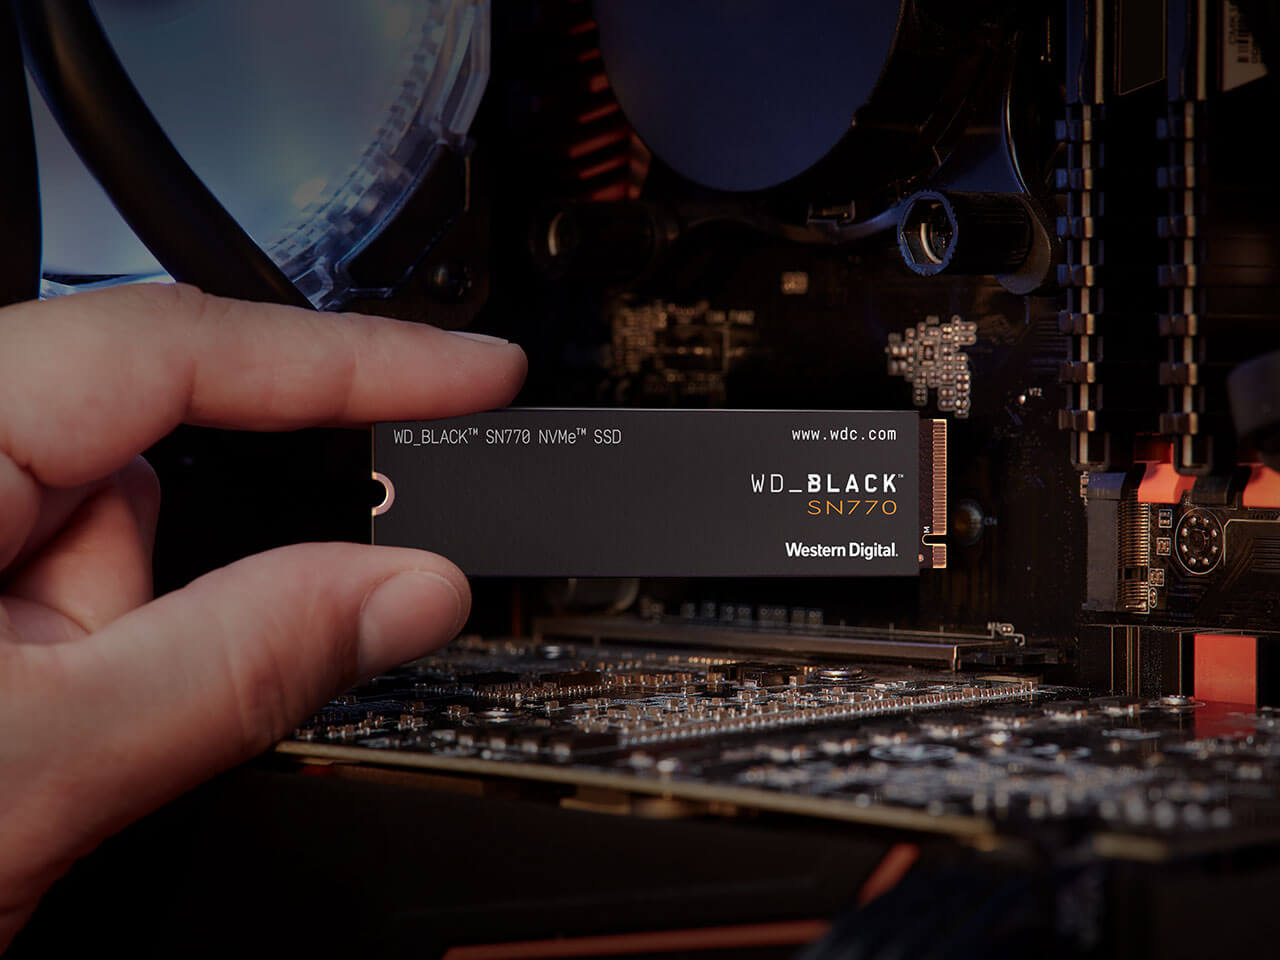 WD_BLACK SN770 NVMe SSD para llevar nuestros juegos al próximo nivel